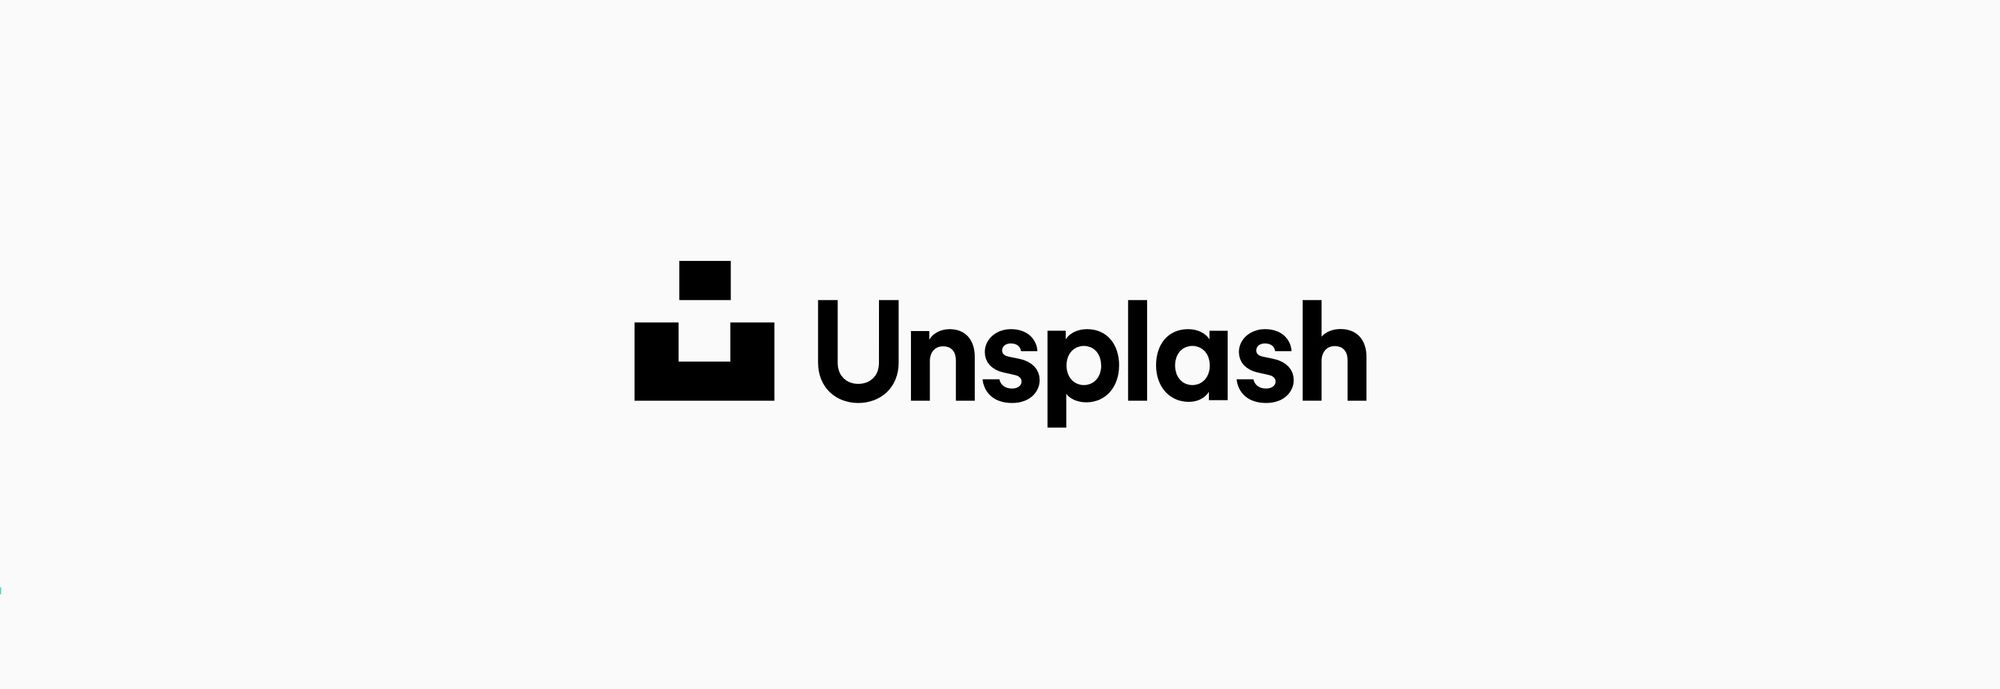 Unsplash - бесплатный фотосток скачать изображения без регистрации